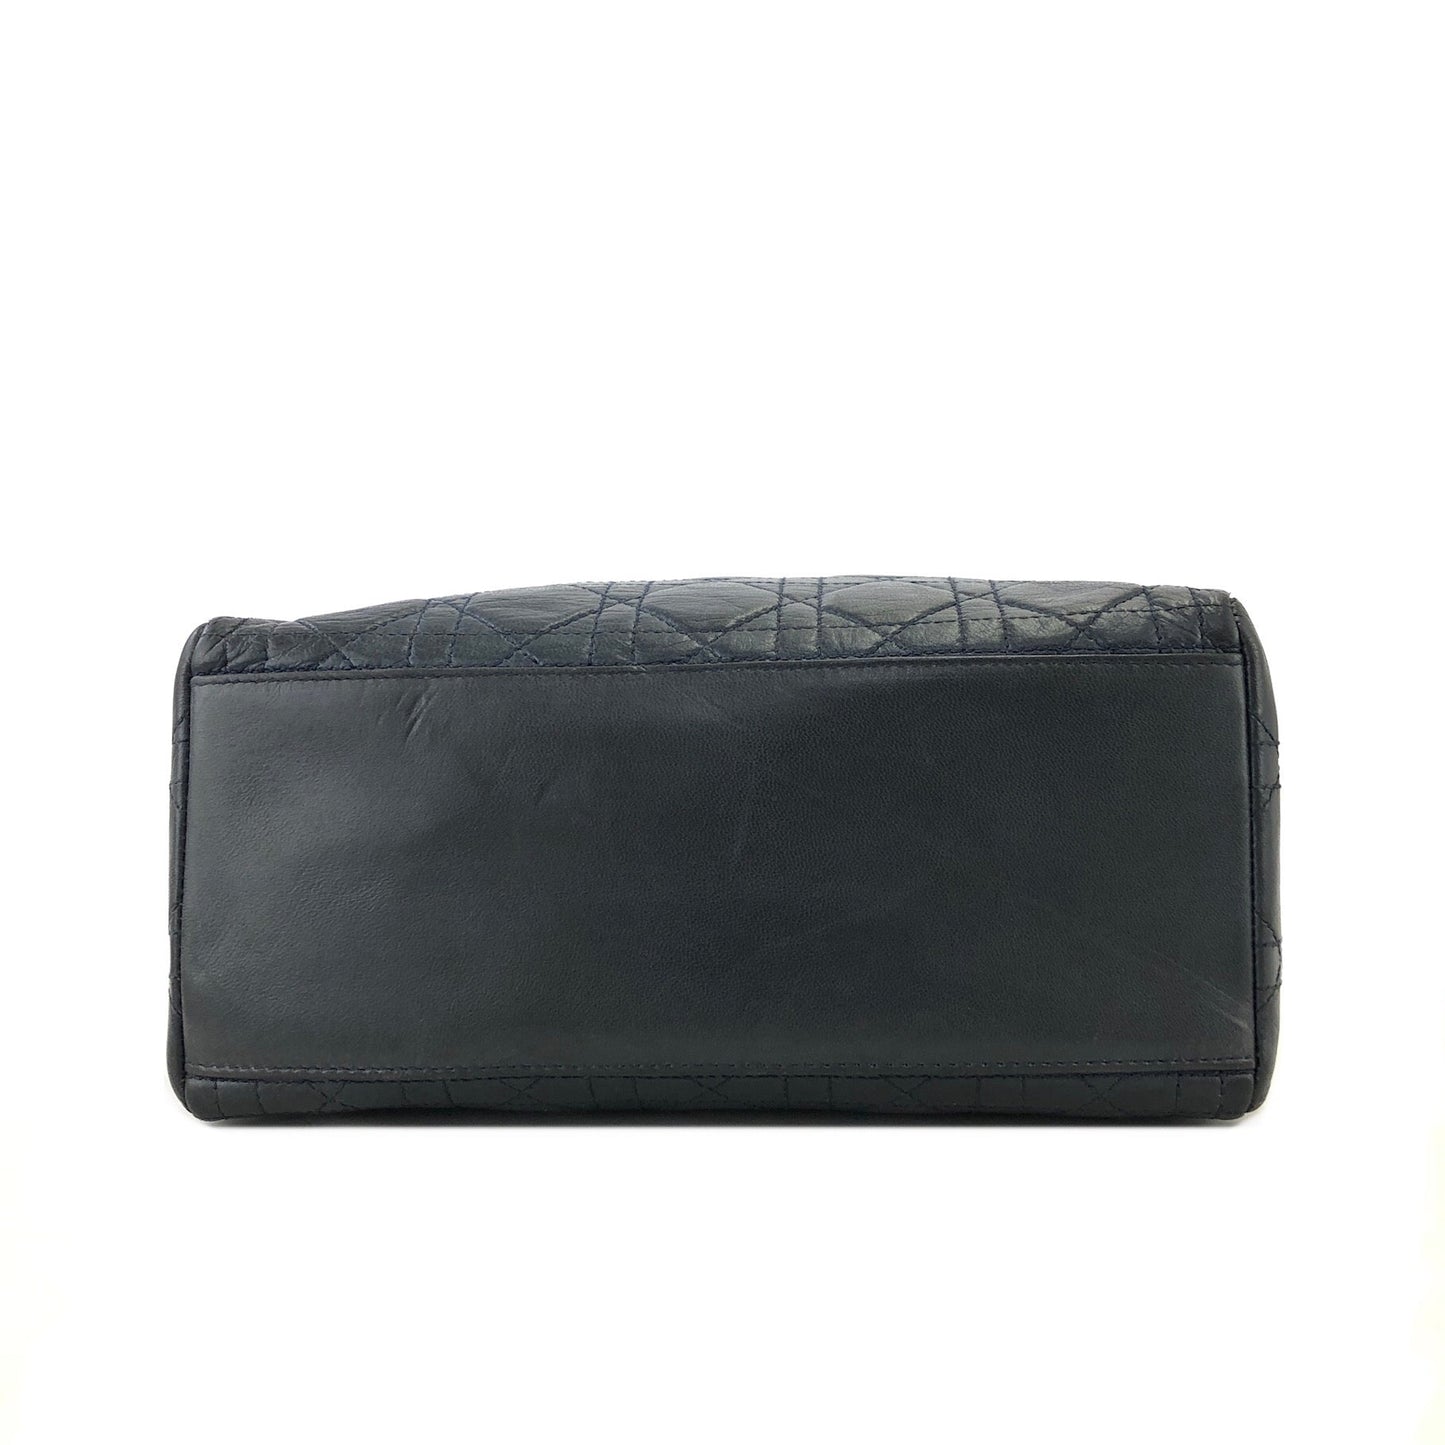 Christian Dior Cannage Lady dior Leather Handbag navy 48dafg